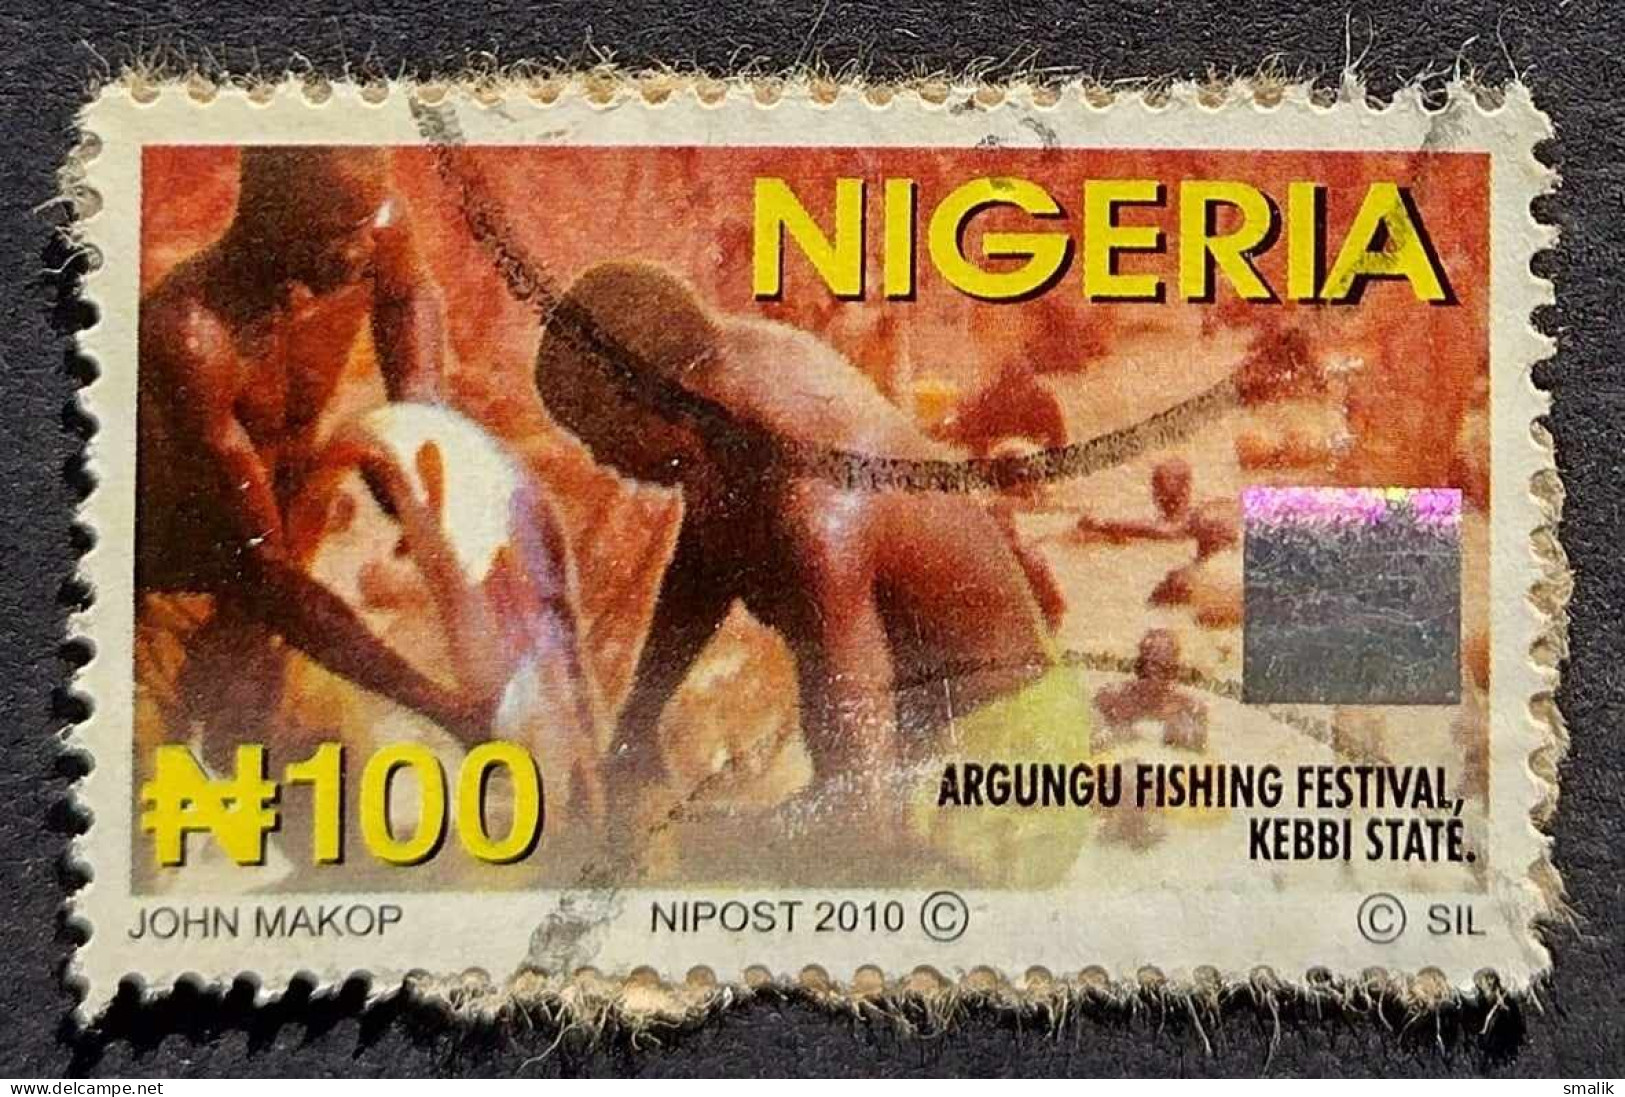 NIGERIA 2010 - Argungu Fishing Festival Kebbi State, Hologram Stamp Unusual, Fine Used - Nigeria (1961-...)